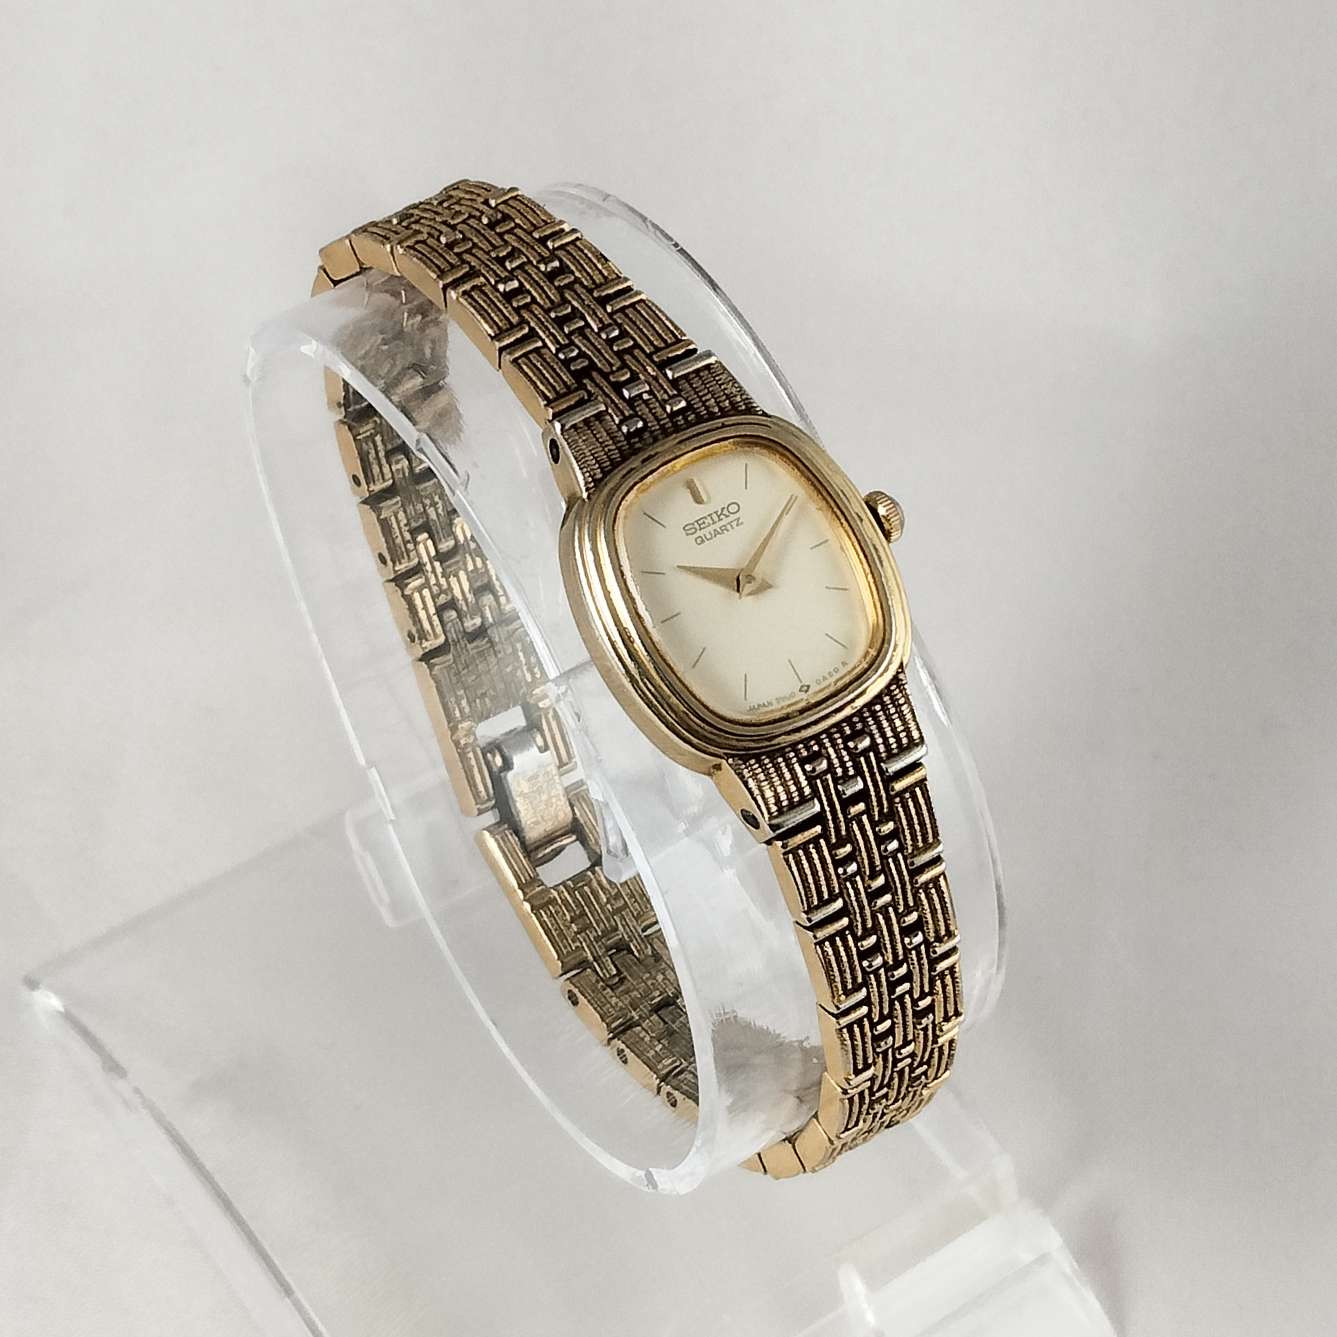 Seiko Petite Watch, Gold Tone, Textured Bracelet Strap